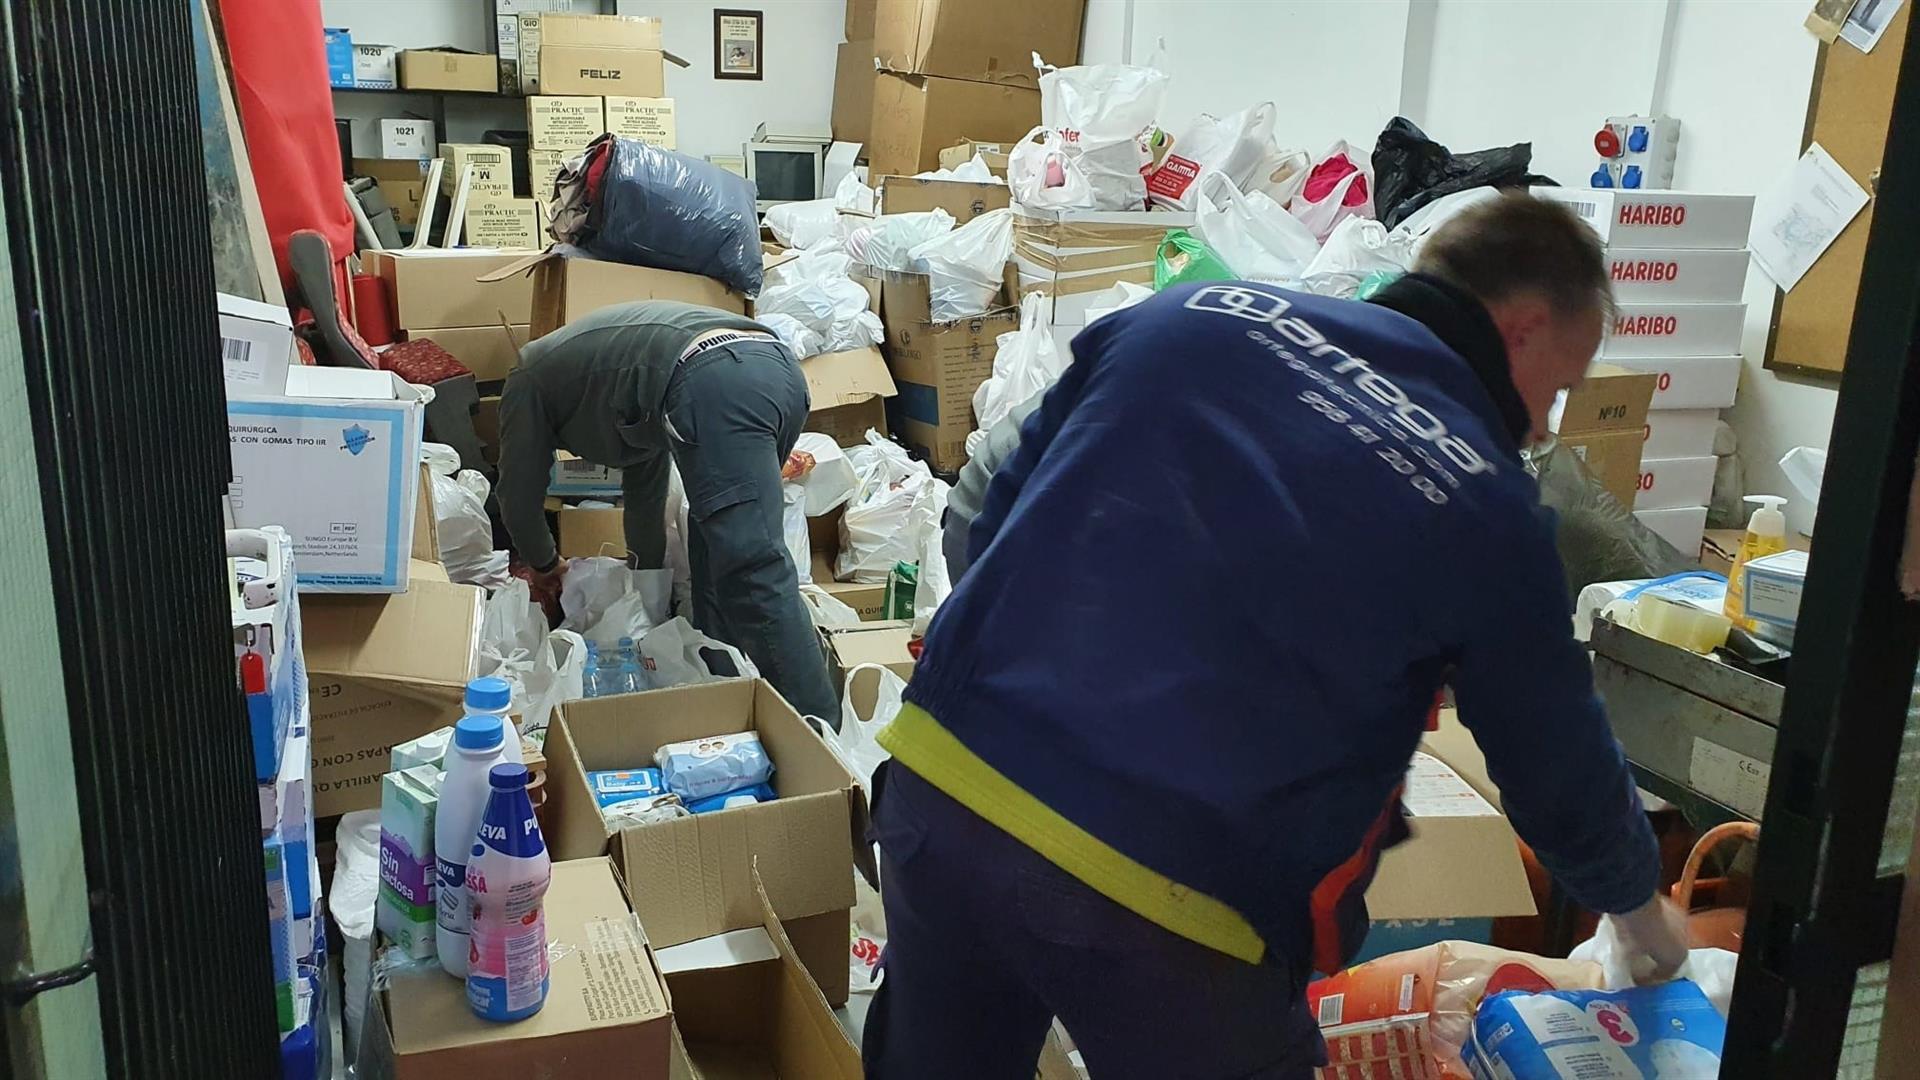 Parten para Ucrania alimentos, medicinas y materiales donados por vecinos de Huétor Tájar